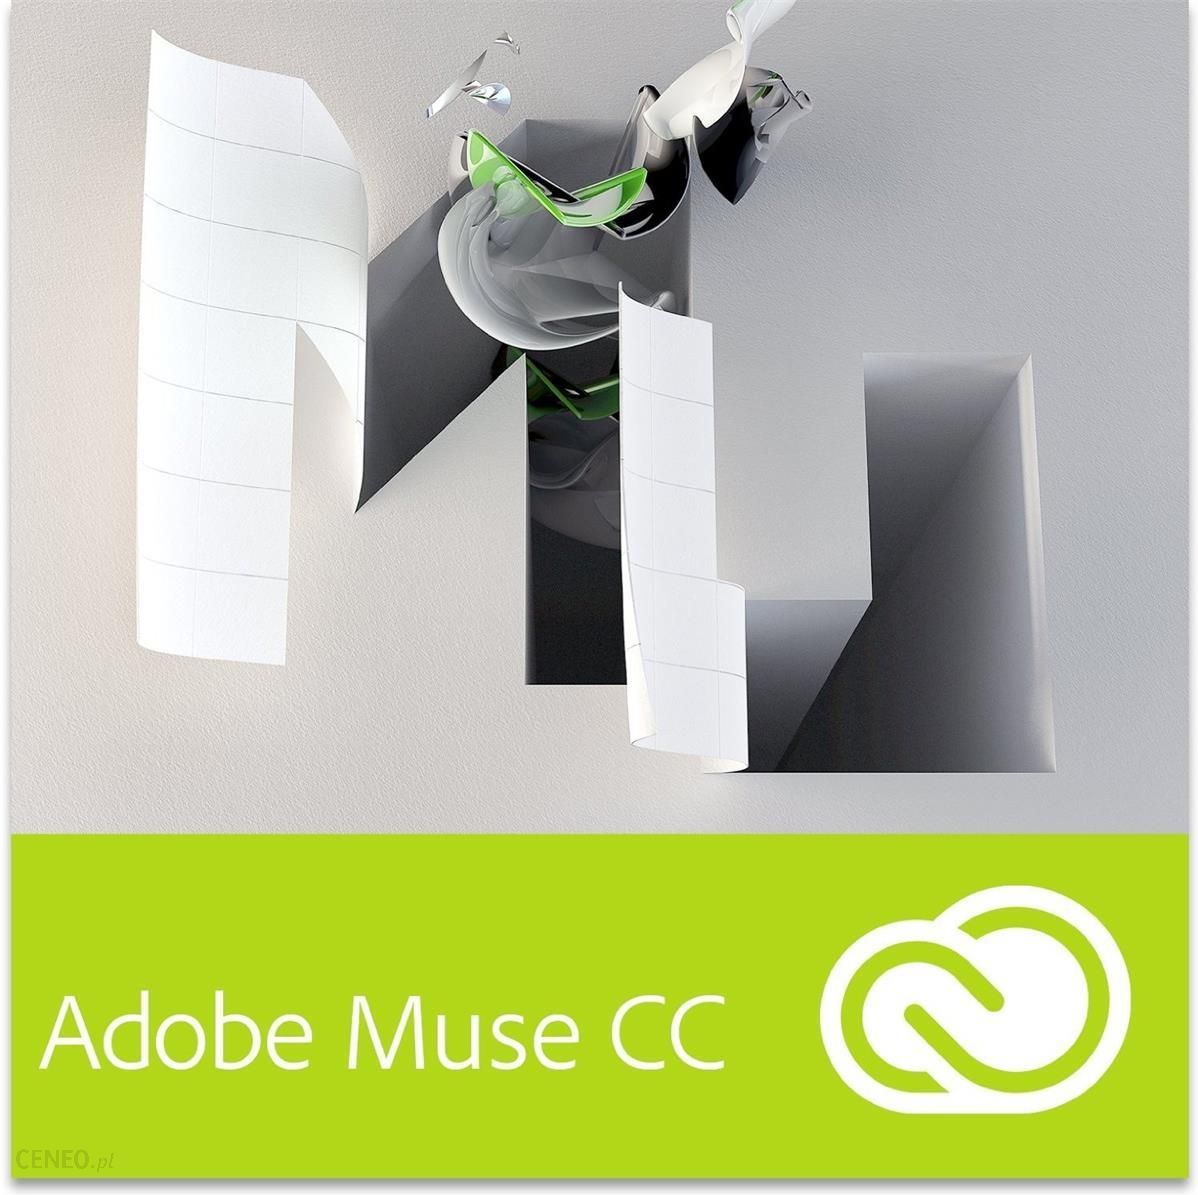 adobe muse download mac